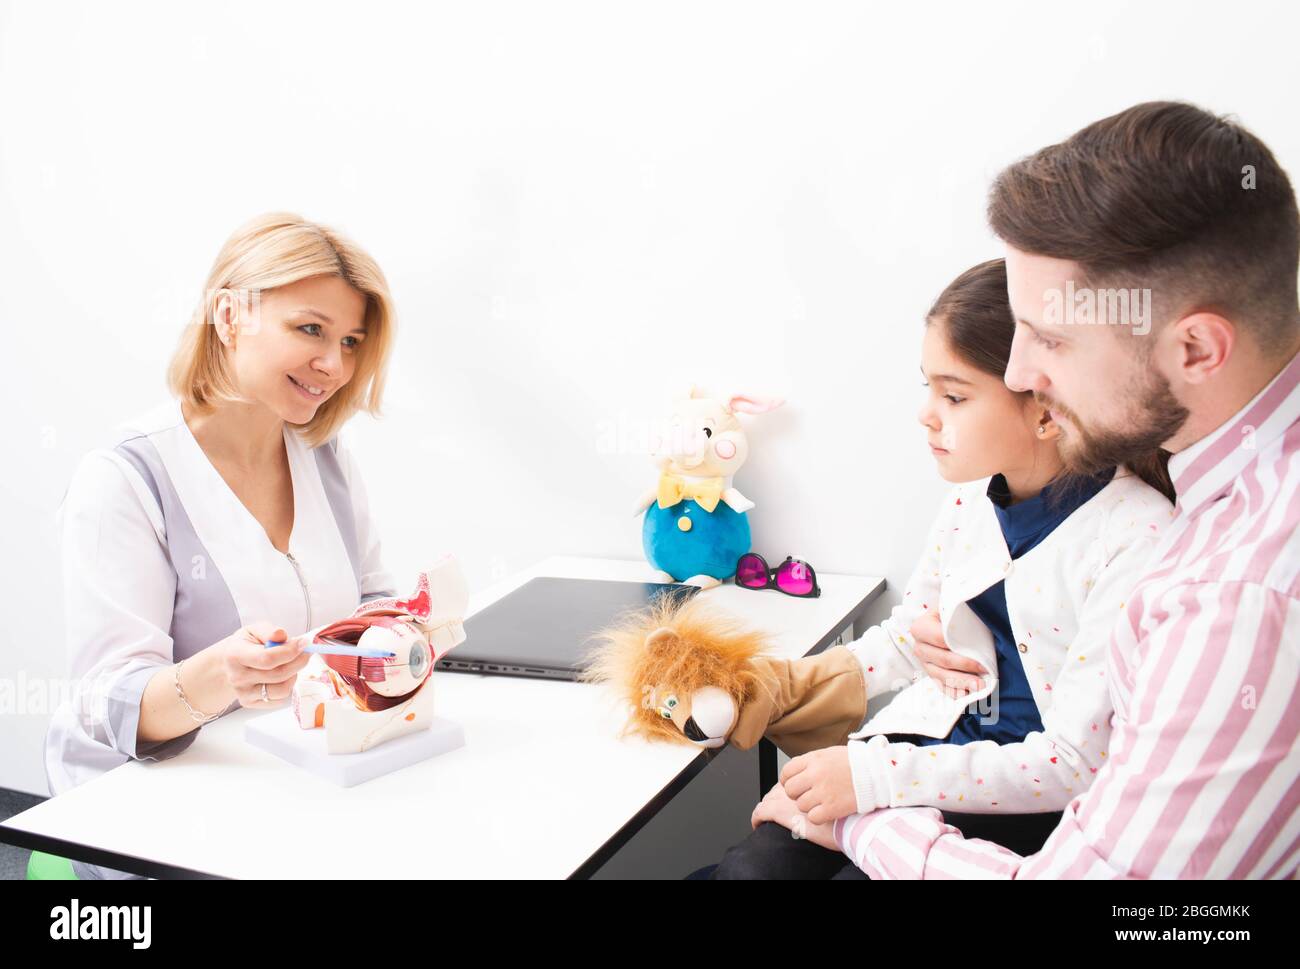 Femme optométriste montre un modèle de l'oeil humain à une petite fille patient et son père dans le bureau ophtalmologique. Correction de la vision chez les enfants Banque D'Images